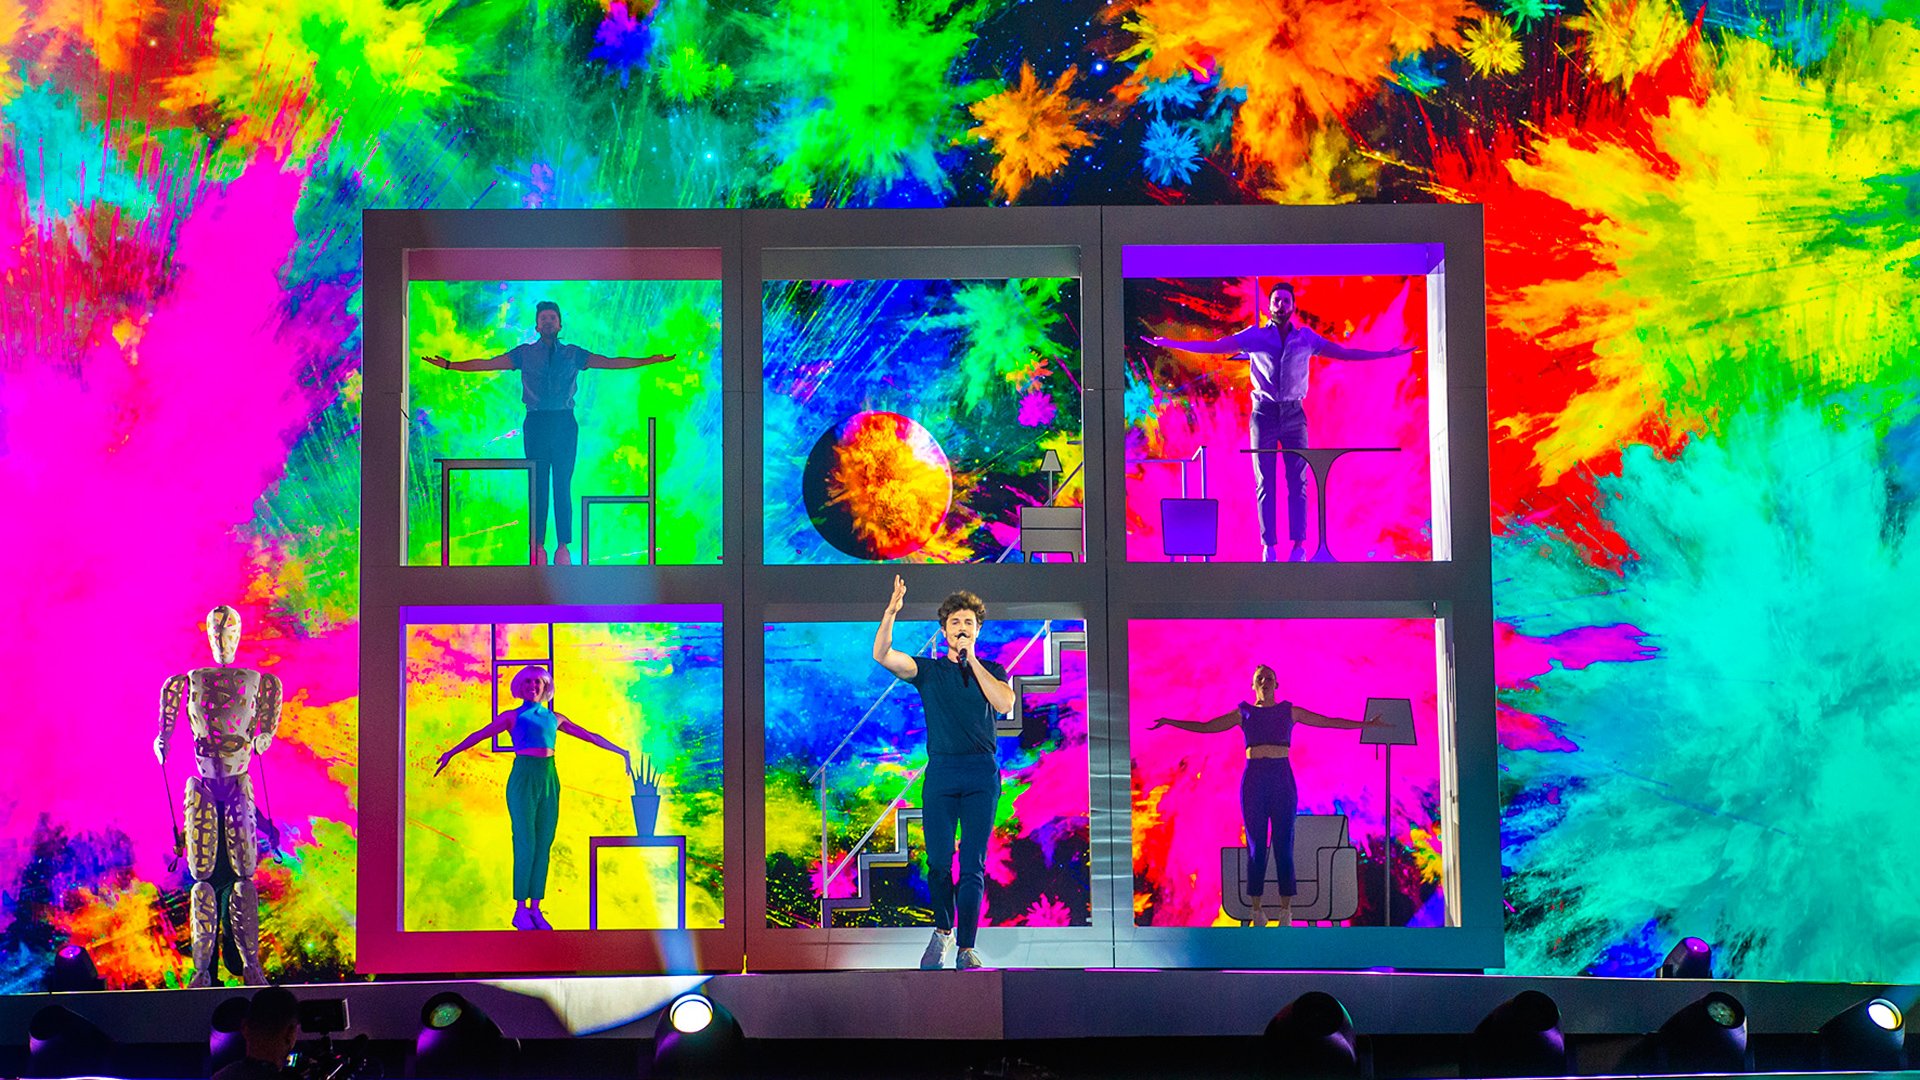 Imagen de Miki Núñez frente a una estantería gigante blanca y un fondo de colores cantando "La venda" en el Festival de Eurovisión 2019